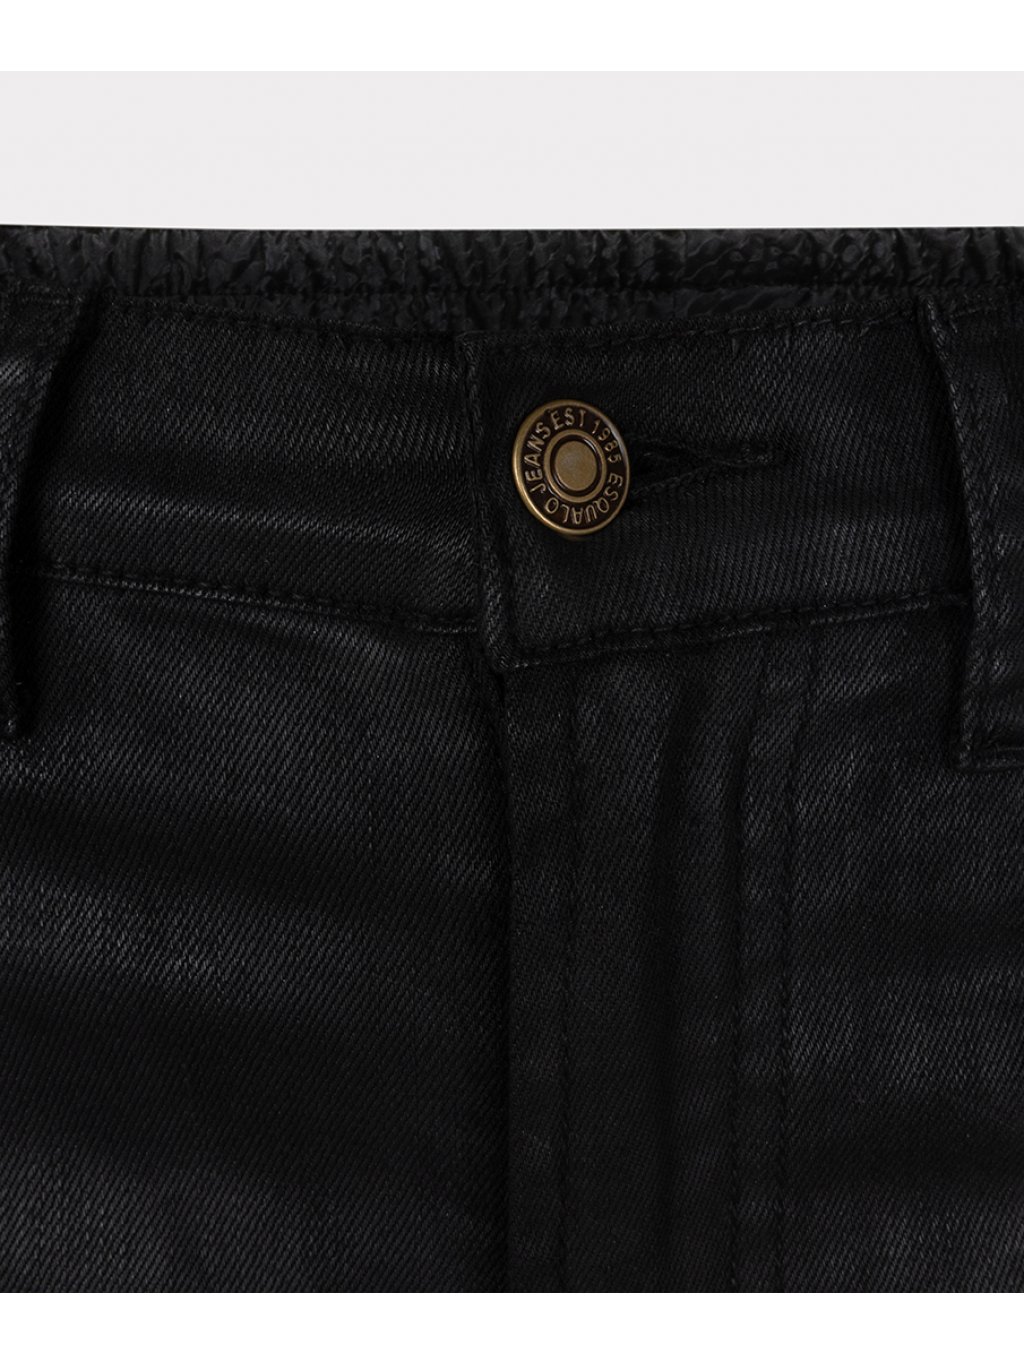 Kalhoty Esqualo 12700 černé džíny s efekty kůže